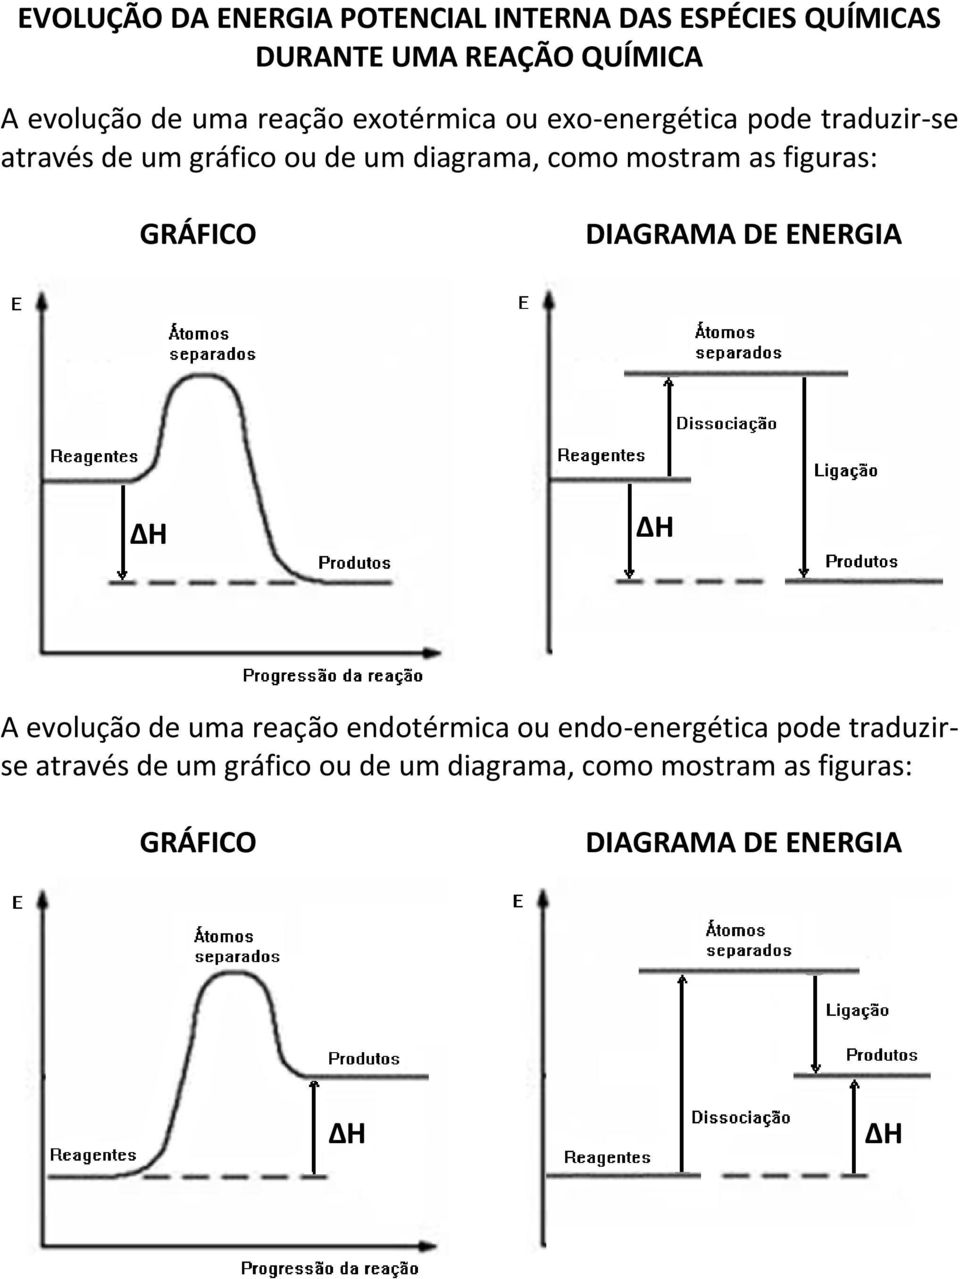 mostram as figuras: GRÁFICO DIAGRAMA DE ENERGIA A evolução de uma reação endotérmica ou endo-energética